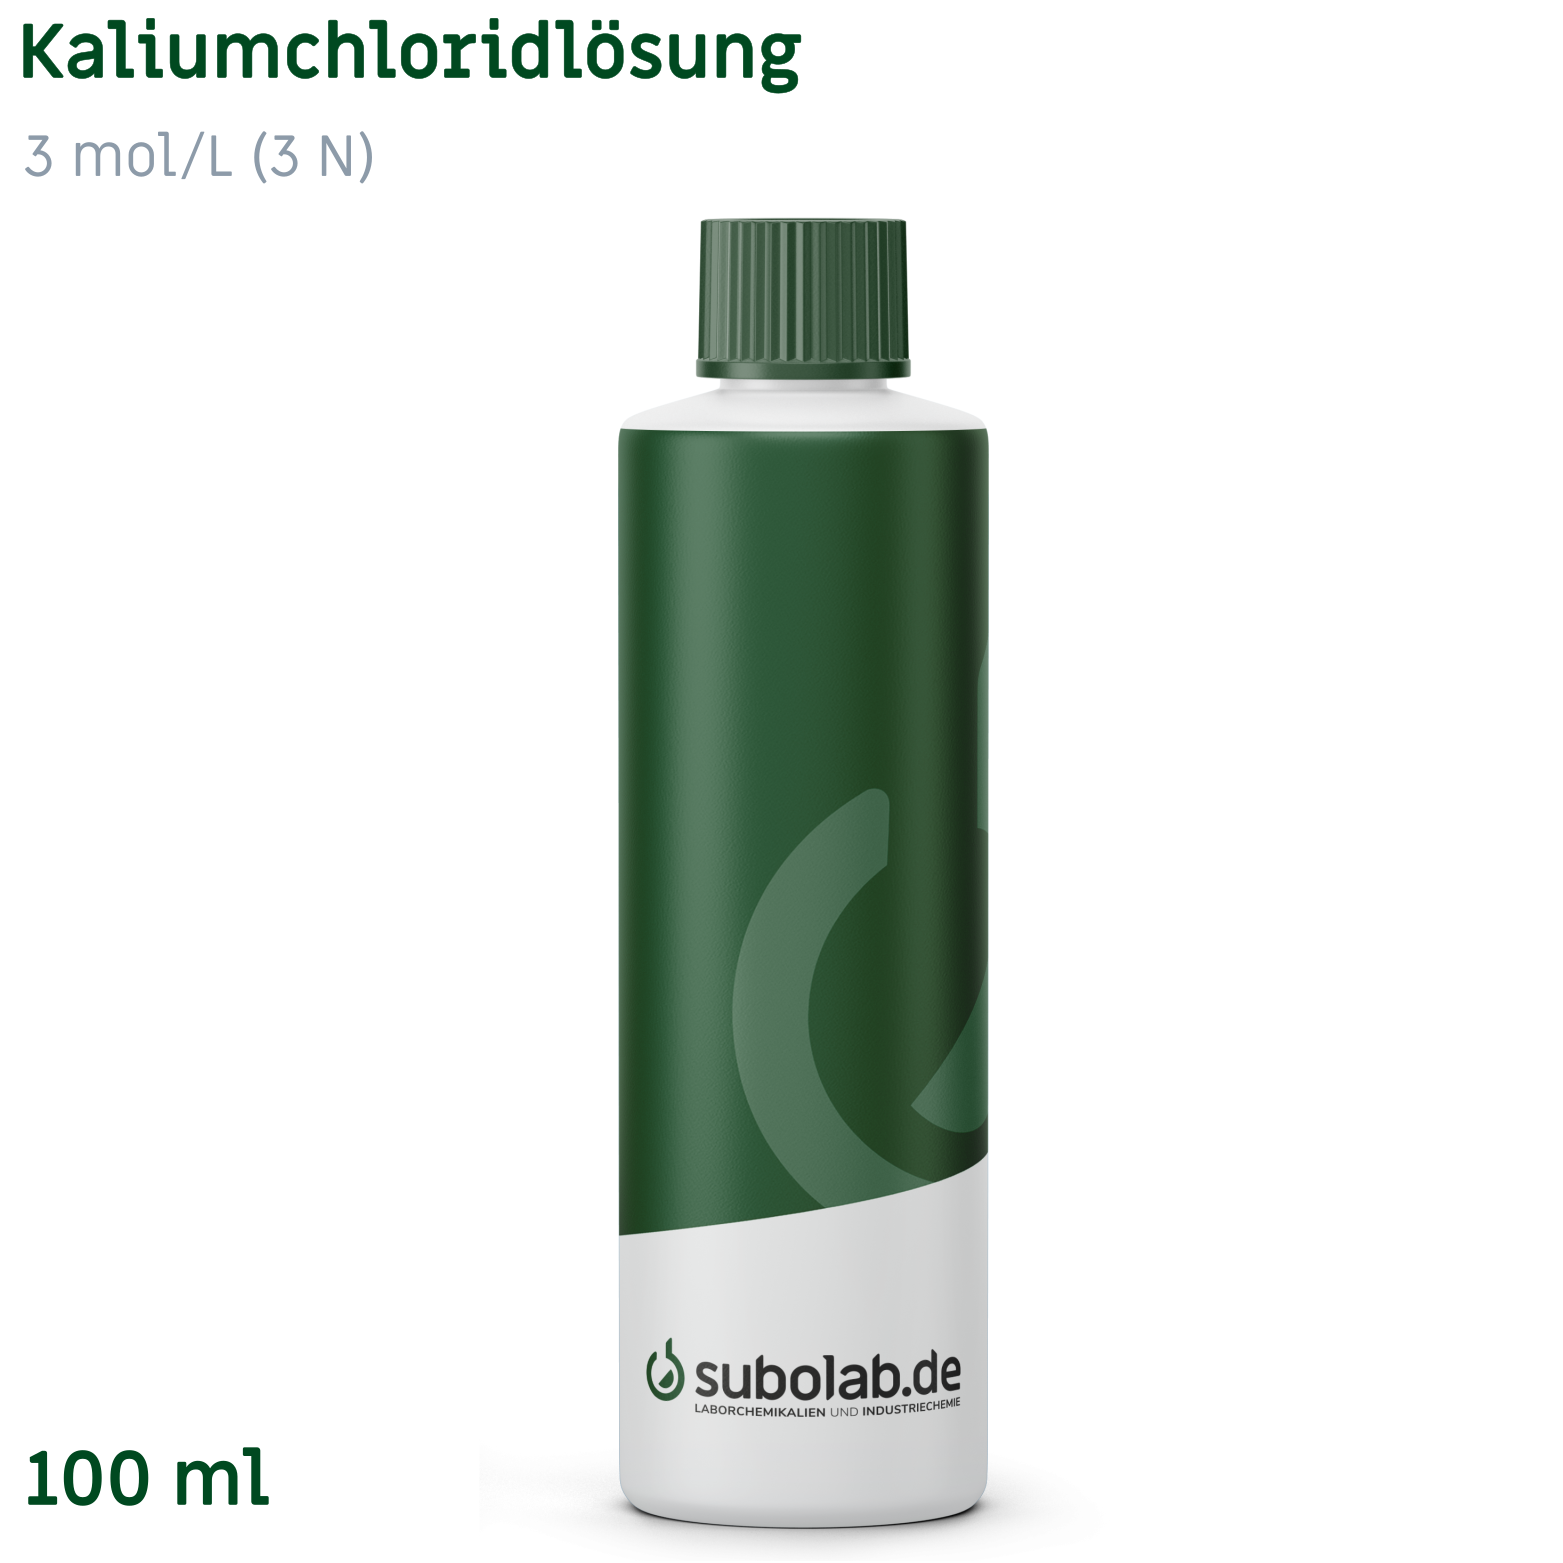 Bild von Kaliumchloridlösung 3 mol/L (3 N) (100 ml)